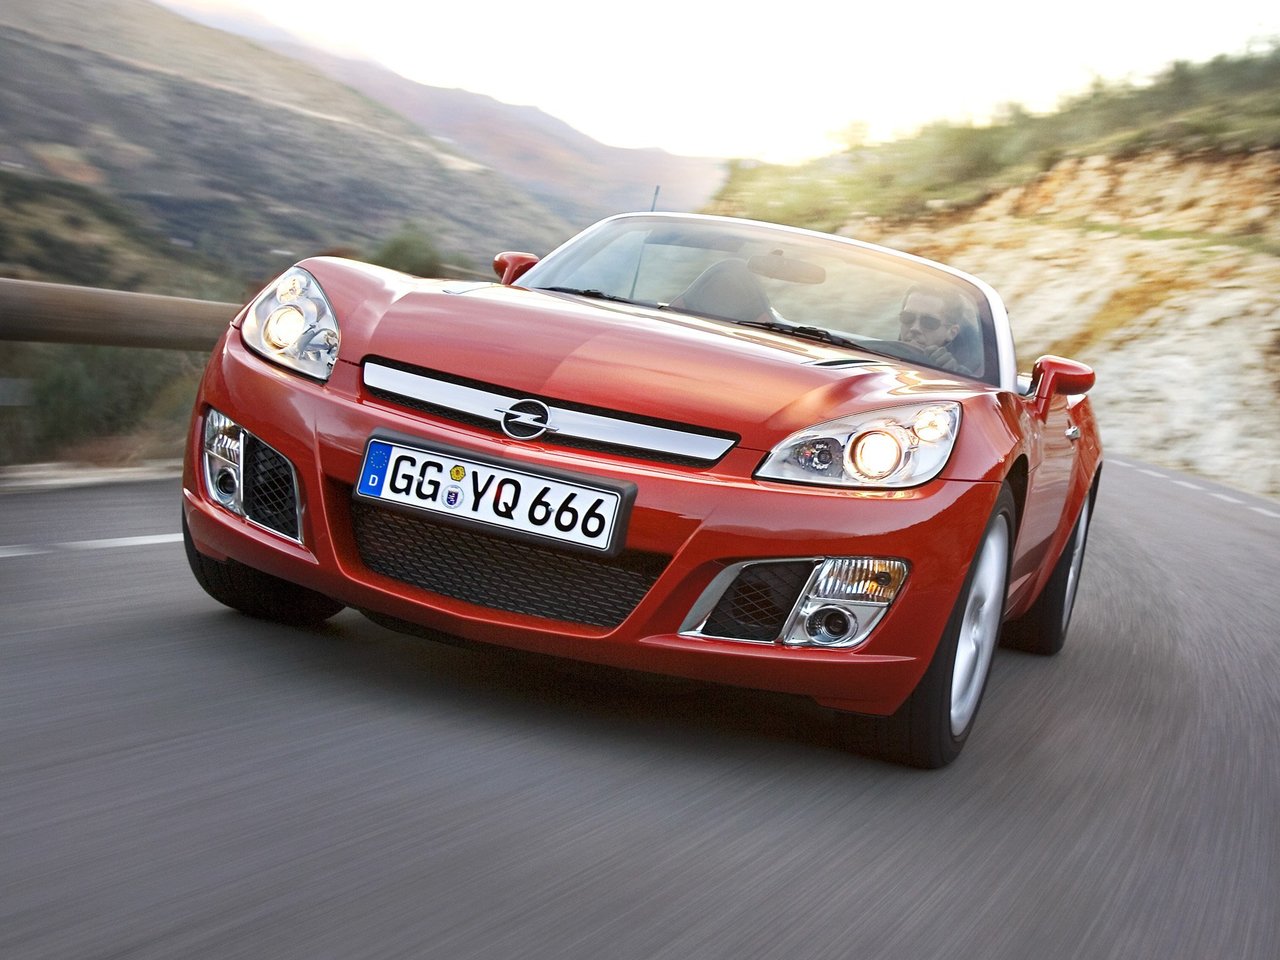 Снижаем расход Opel GT на топливо, устанавливаем ГБО